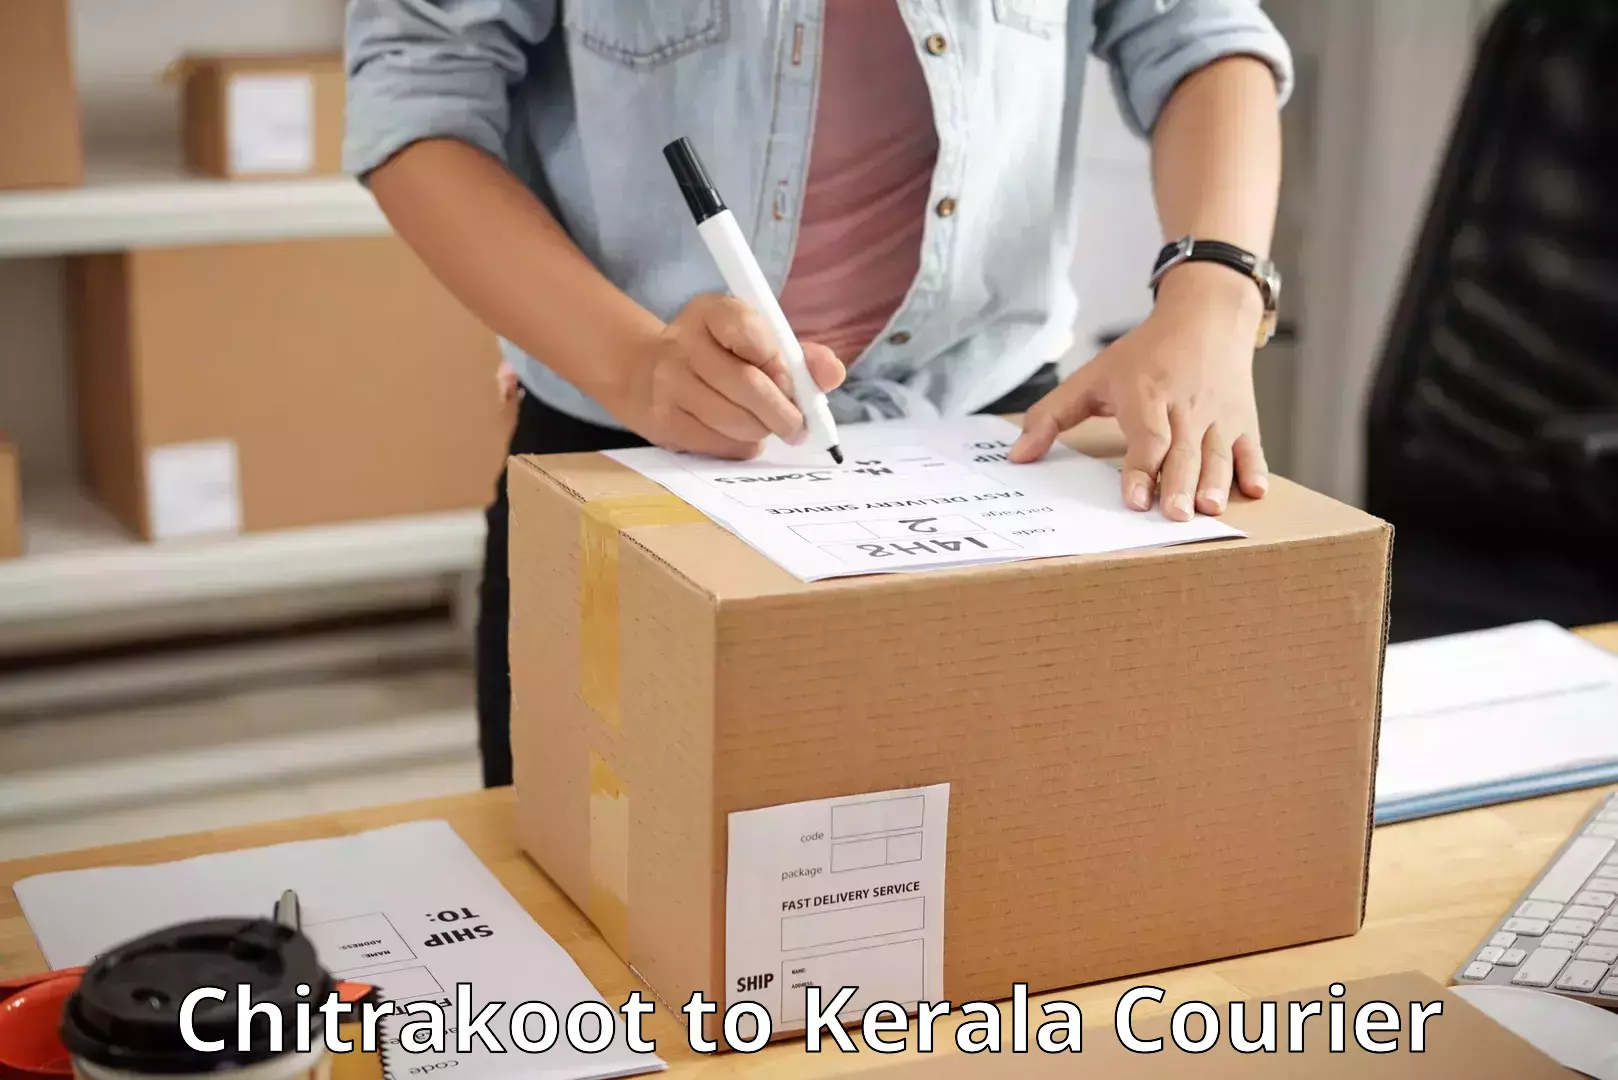 Courier service partnerships Chitrakoot to Kerala